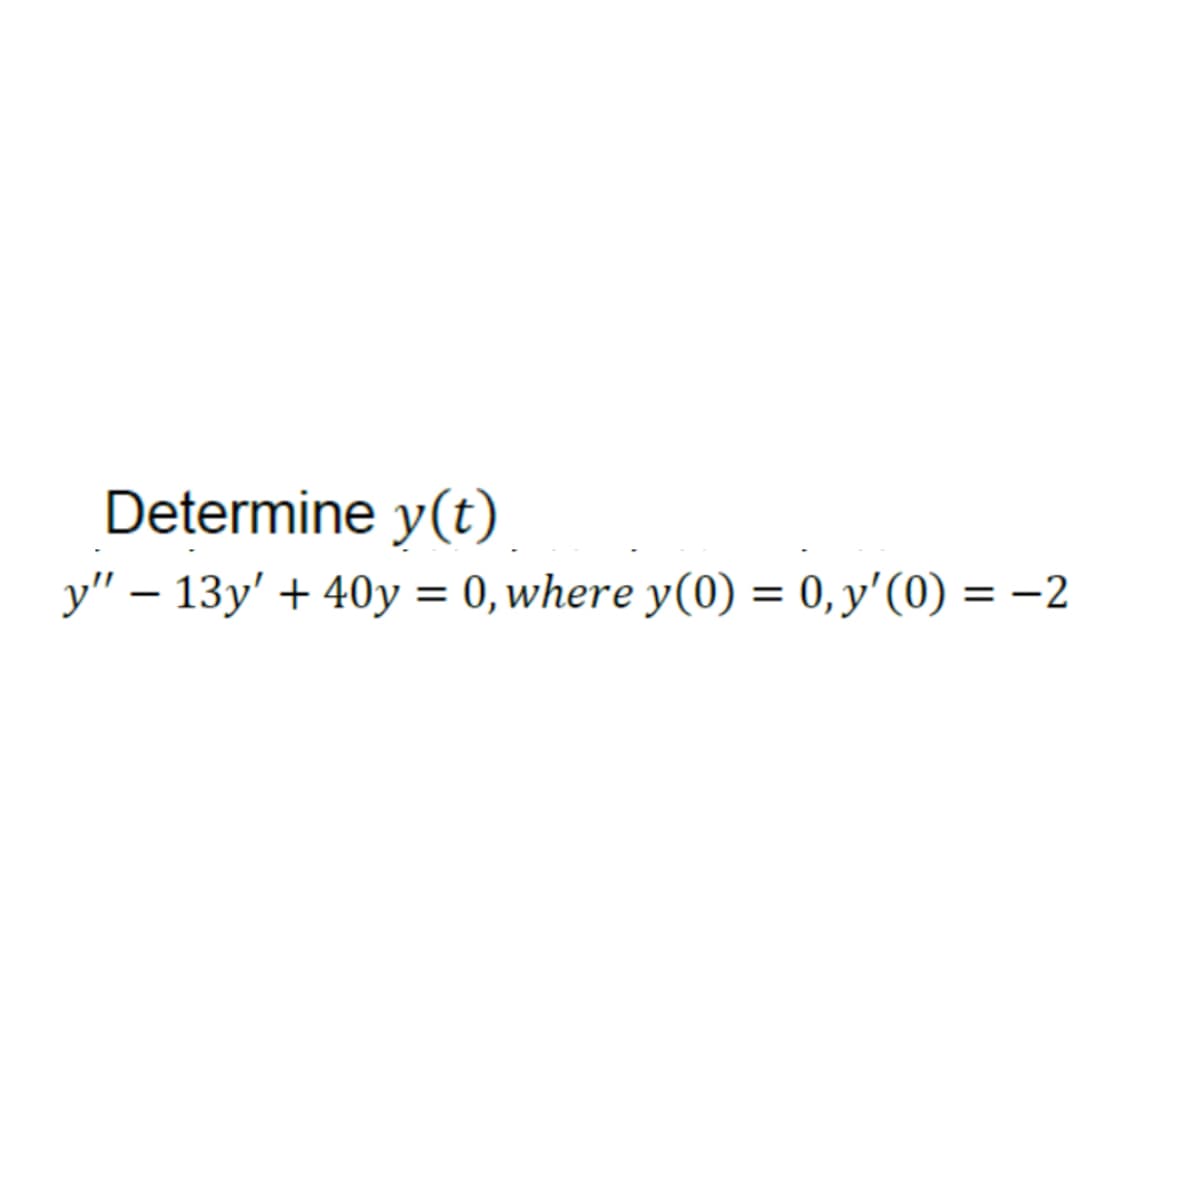 Determine y(t)
y" − 13y' + 40y = 0, where y(0) = 0, y'(0) = −2